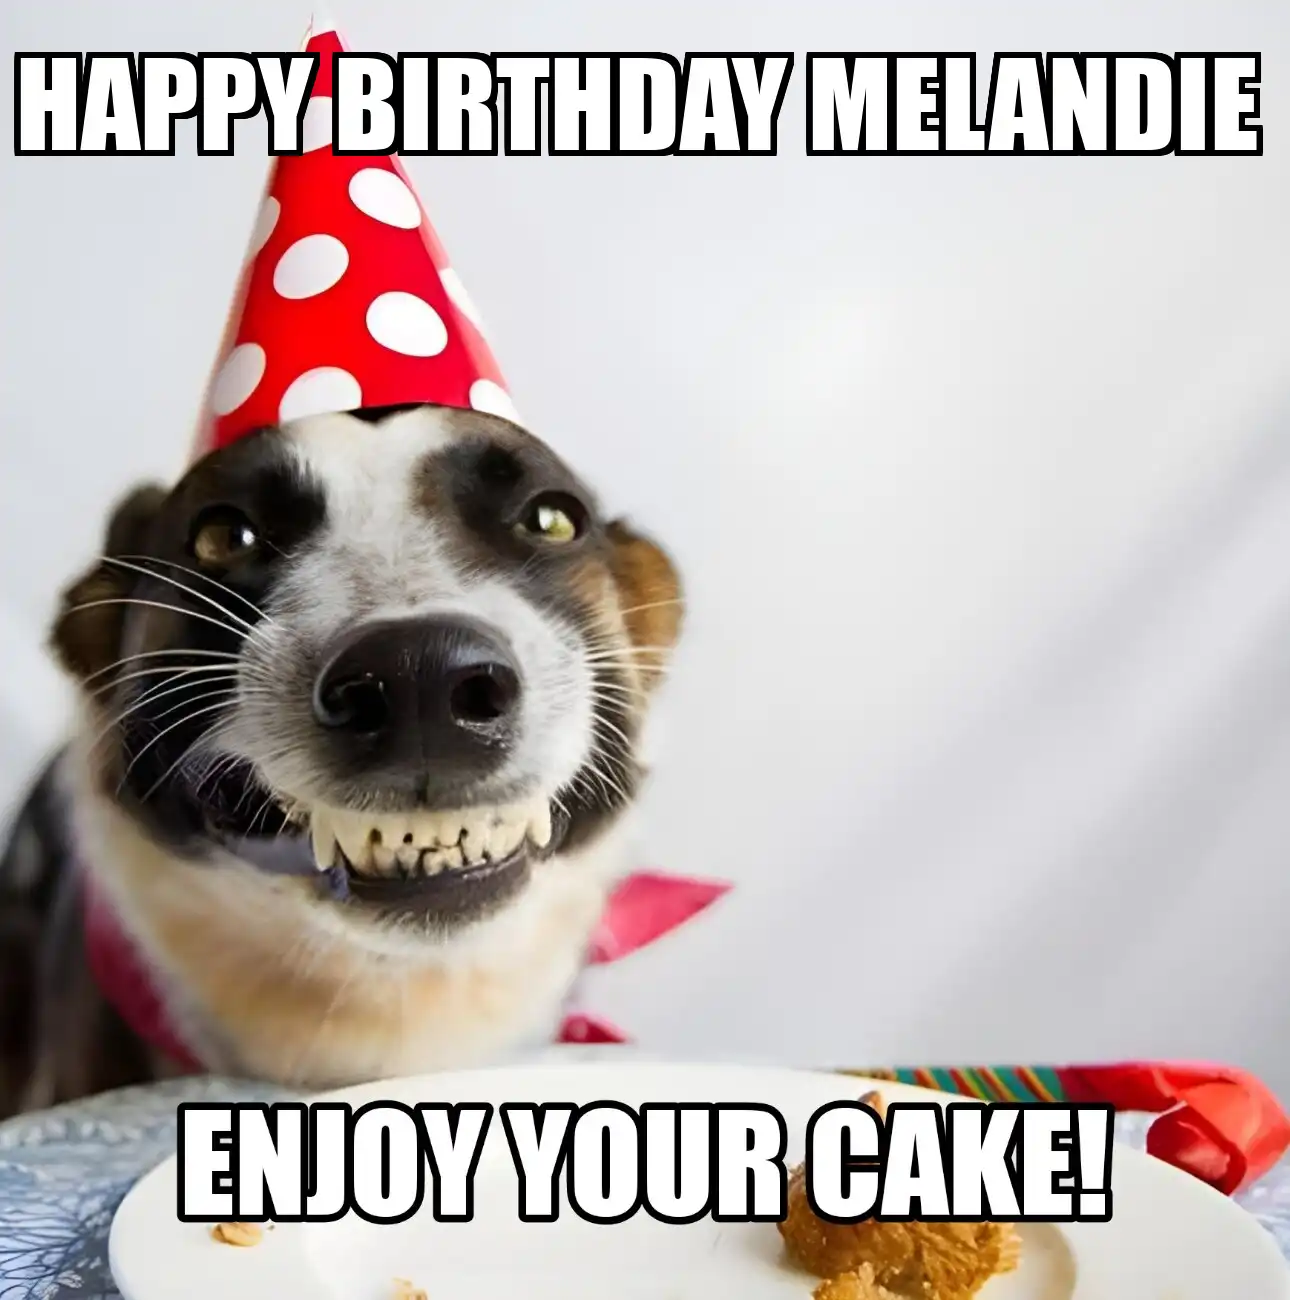 Happy Birthday Melandie Enjoy Your Cake Dog Meme